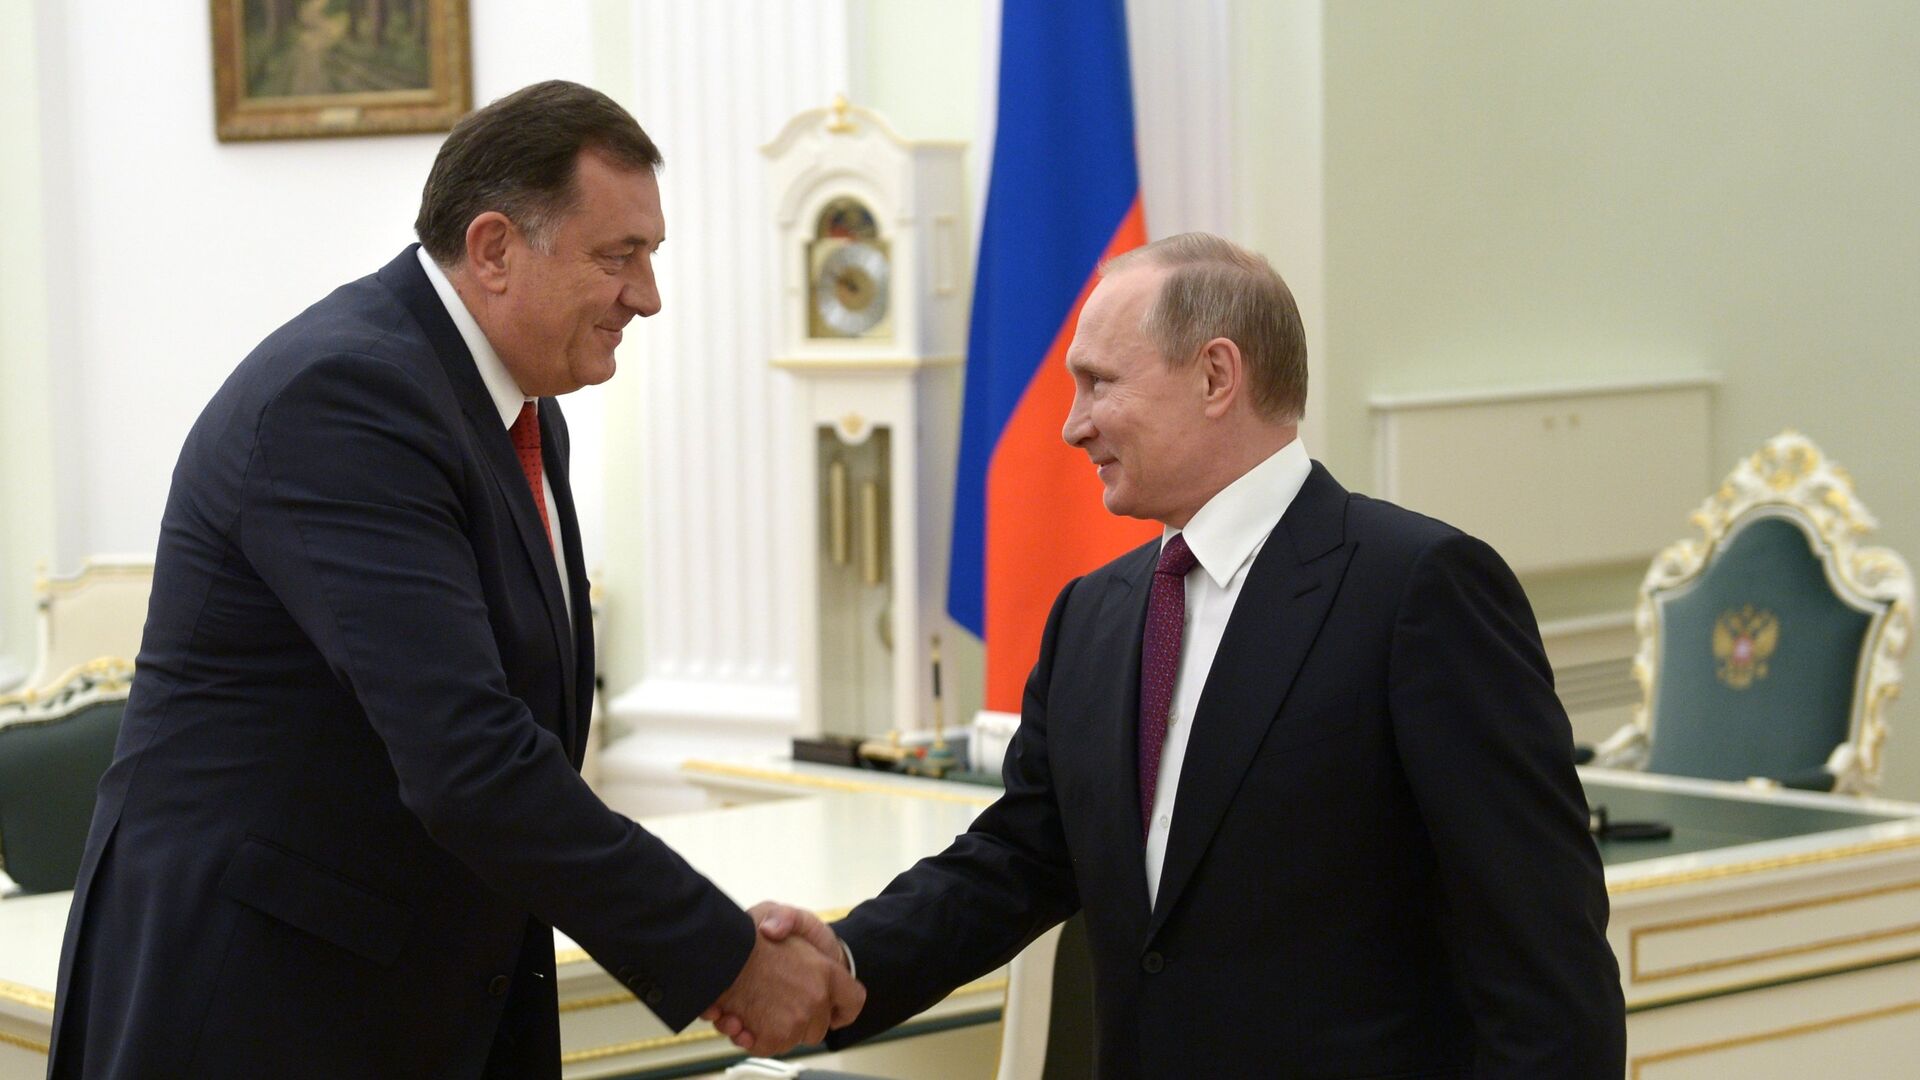 Predsednik Republike Srpske Milorad Dodik i predsednik Rusije Vladimir Putin u Kremlju - Sputnik Srbija, 1920, 03.12.2021